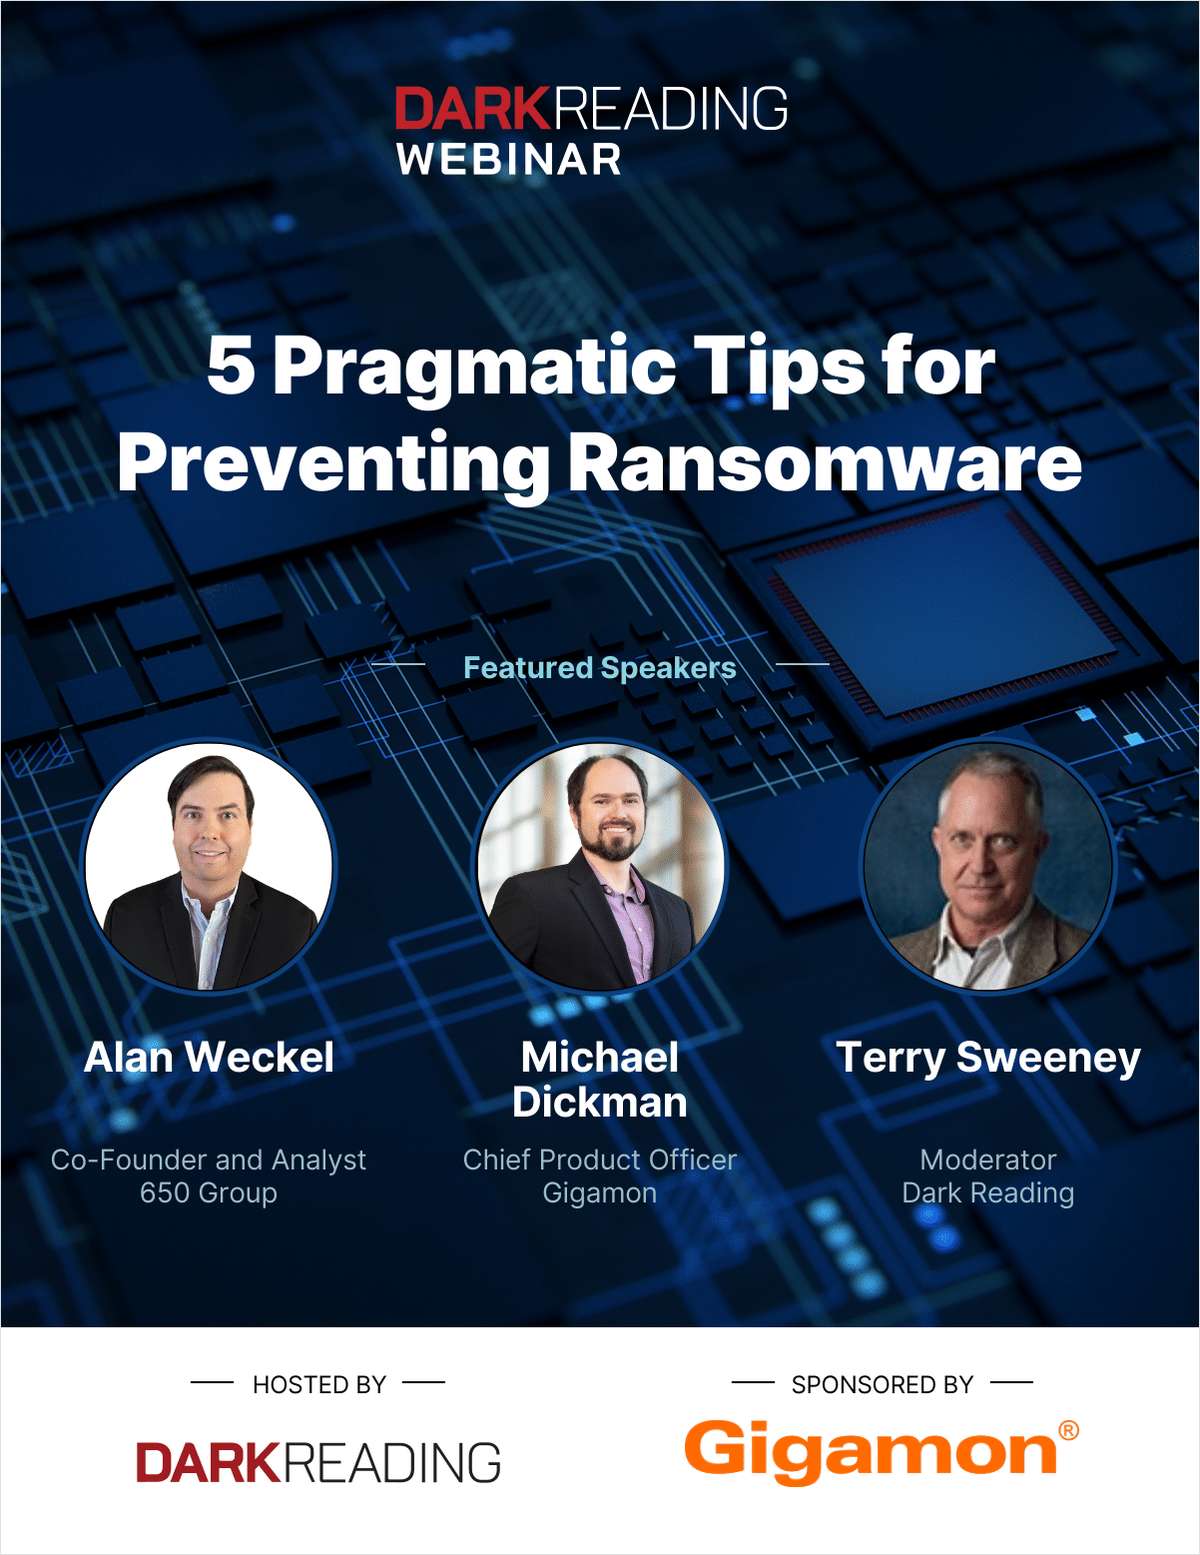 5 Pragmatic Tips for Preventing Ransomware